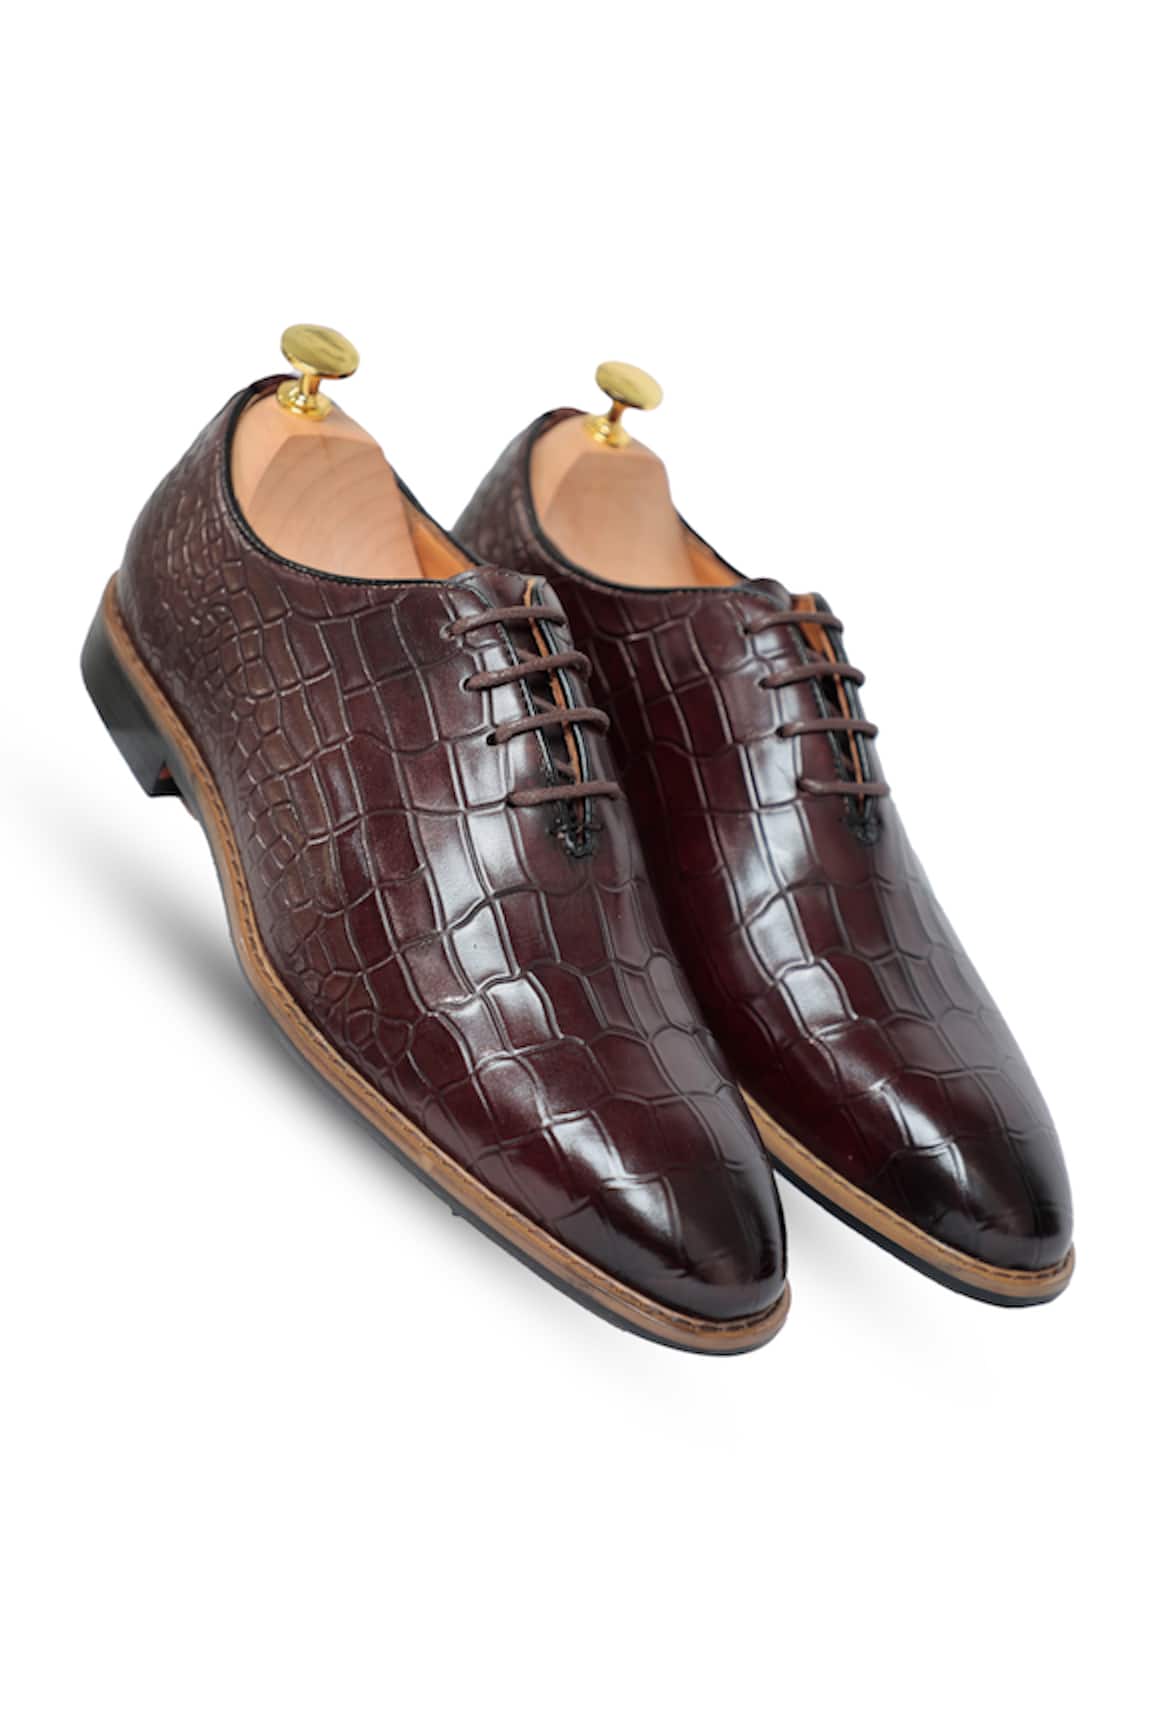 Vantier Bruno Croc Leather Oxford Shoes